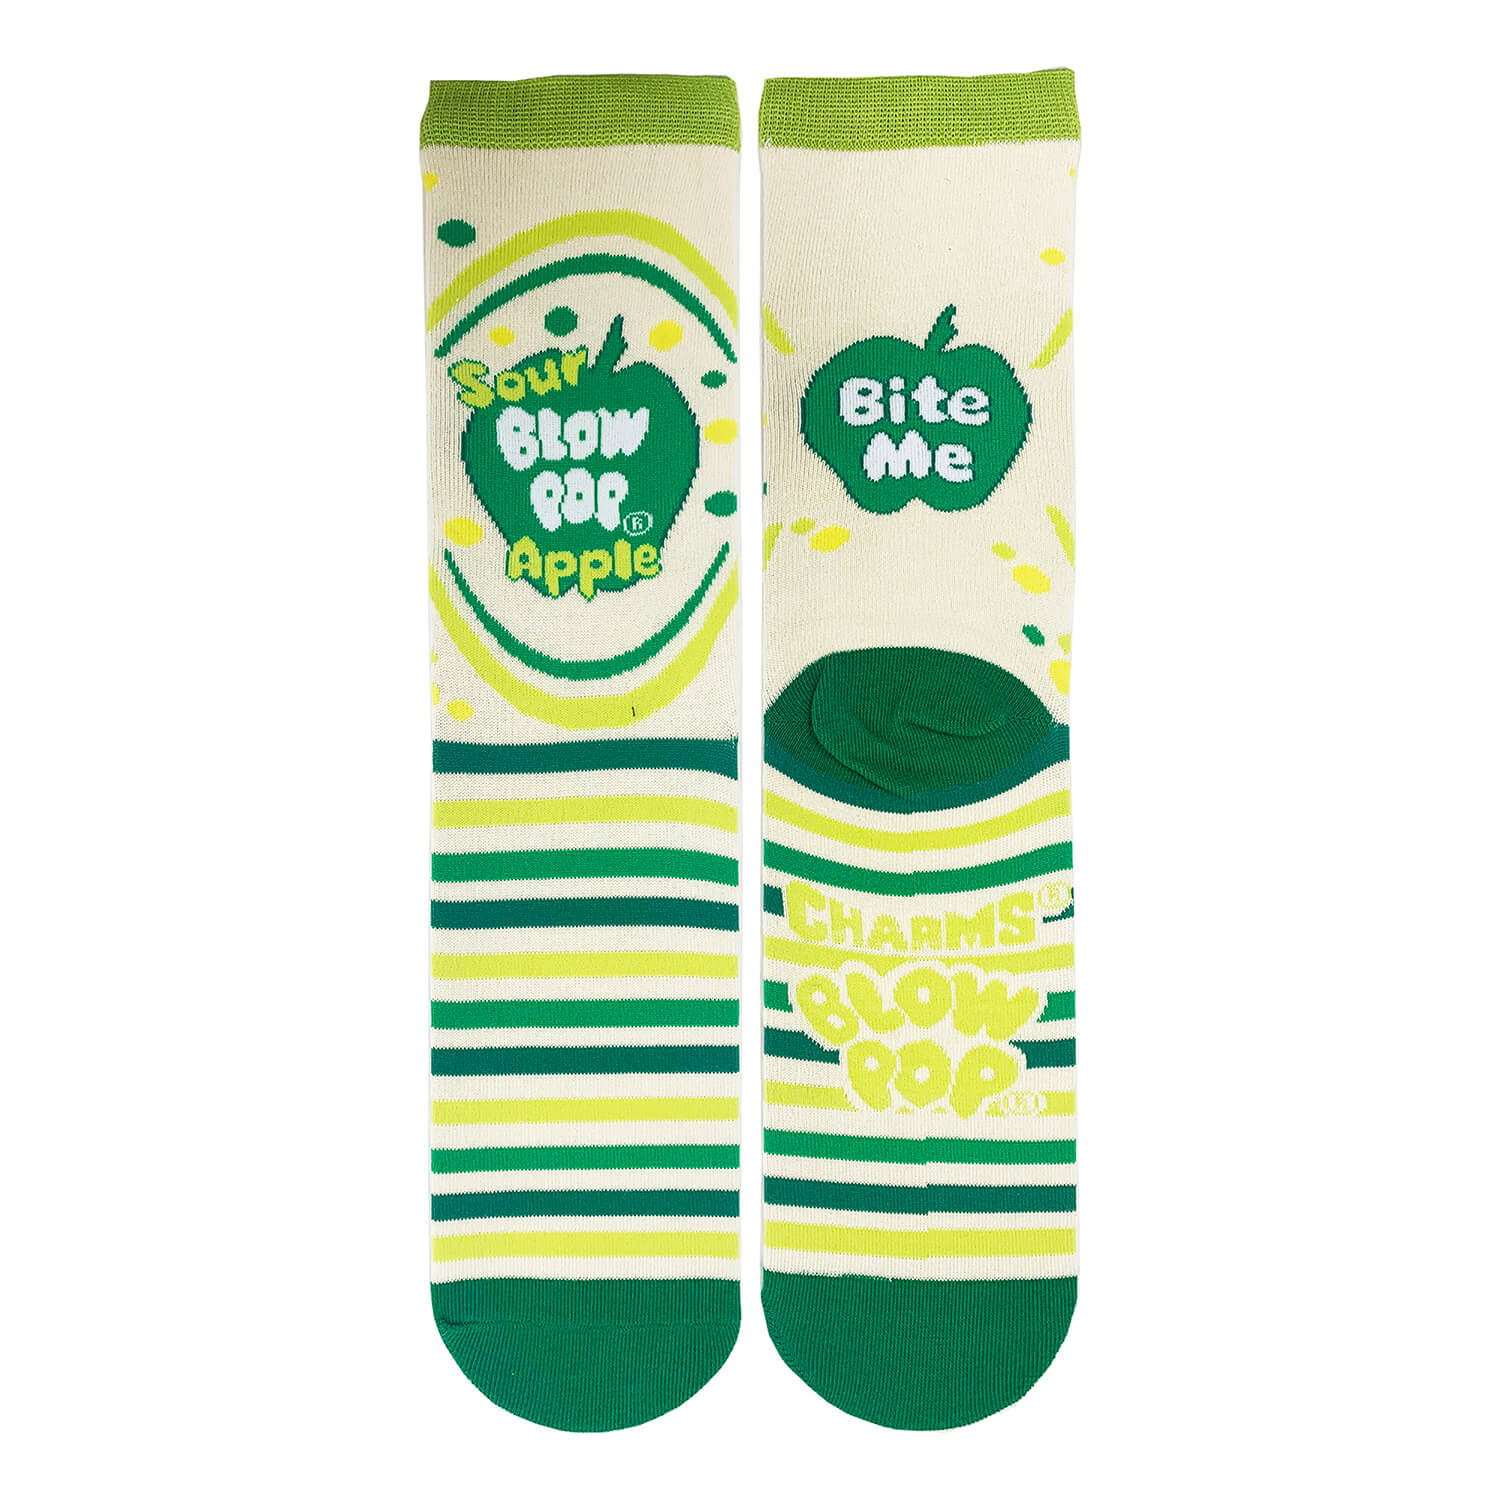 Sour Apple Pop Socks | Novelty Crew Socks For Mens